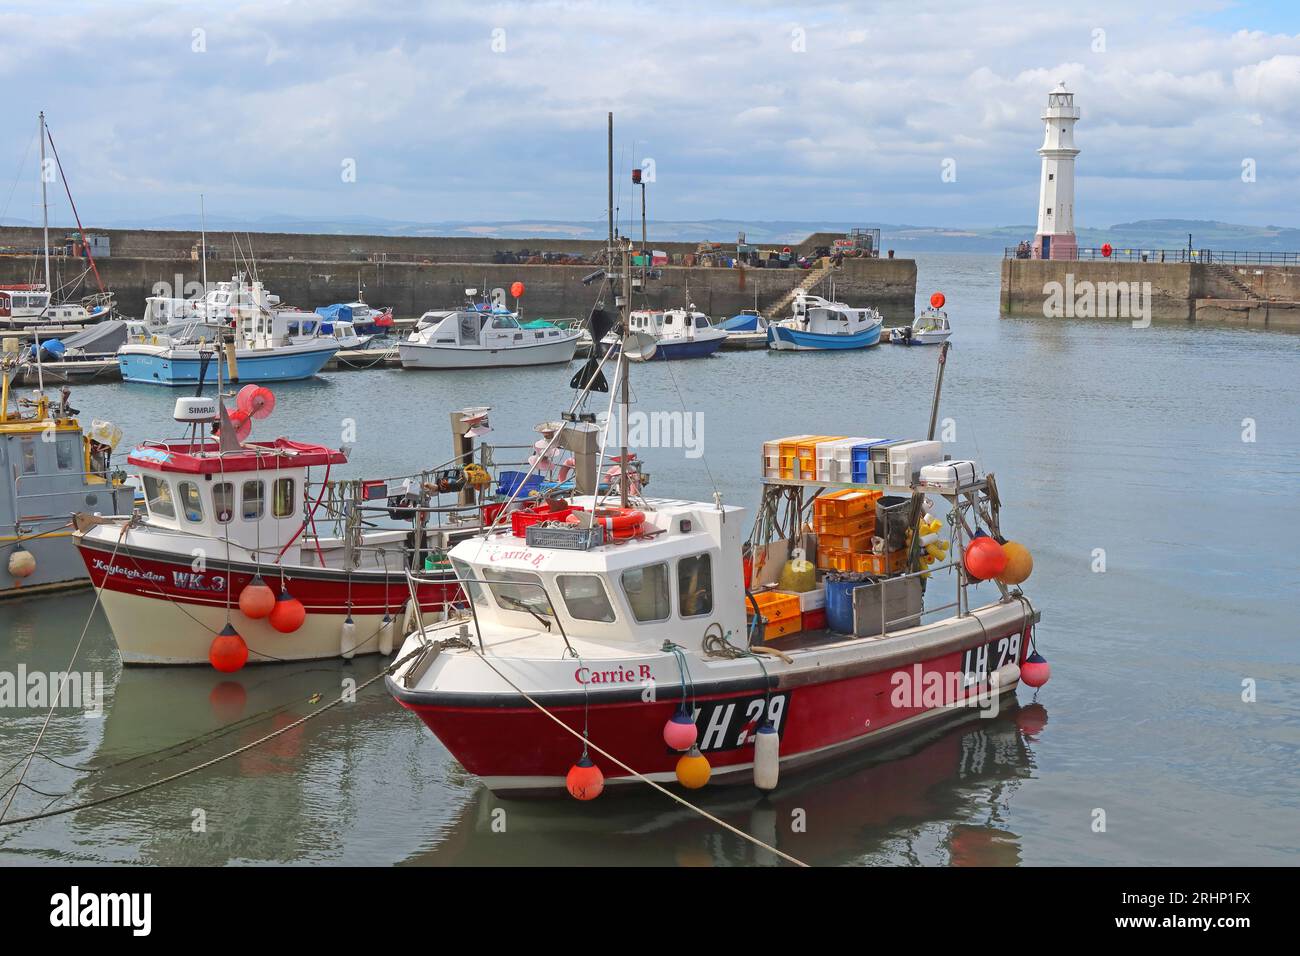 Bateaux et navires de pêche LH29 dans le port ensoleillé de Newhaven à marée haute, Leith, Édimbourg, Écosse, UK, EH6 4LP Banque D'Images